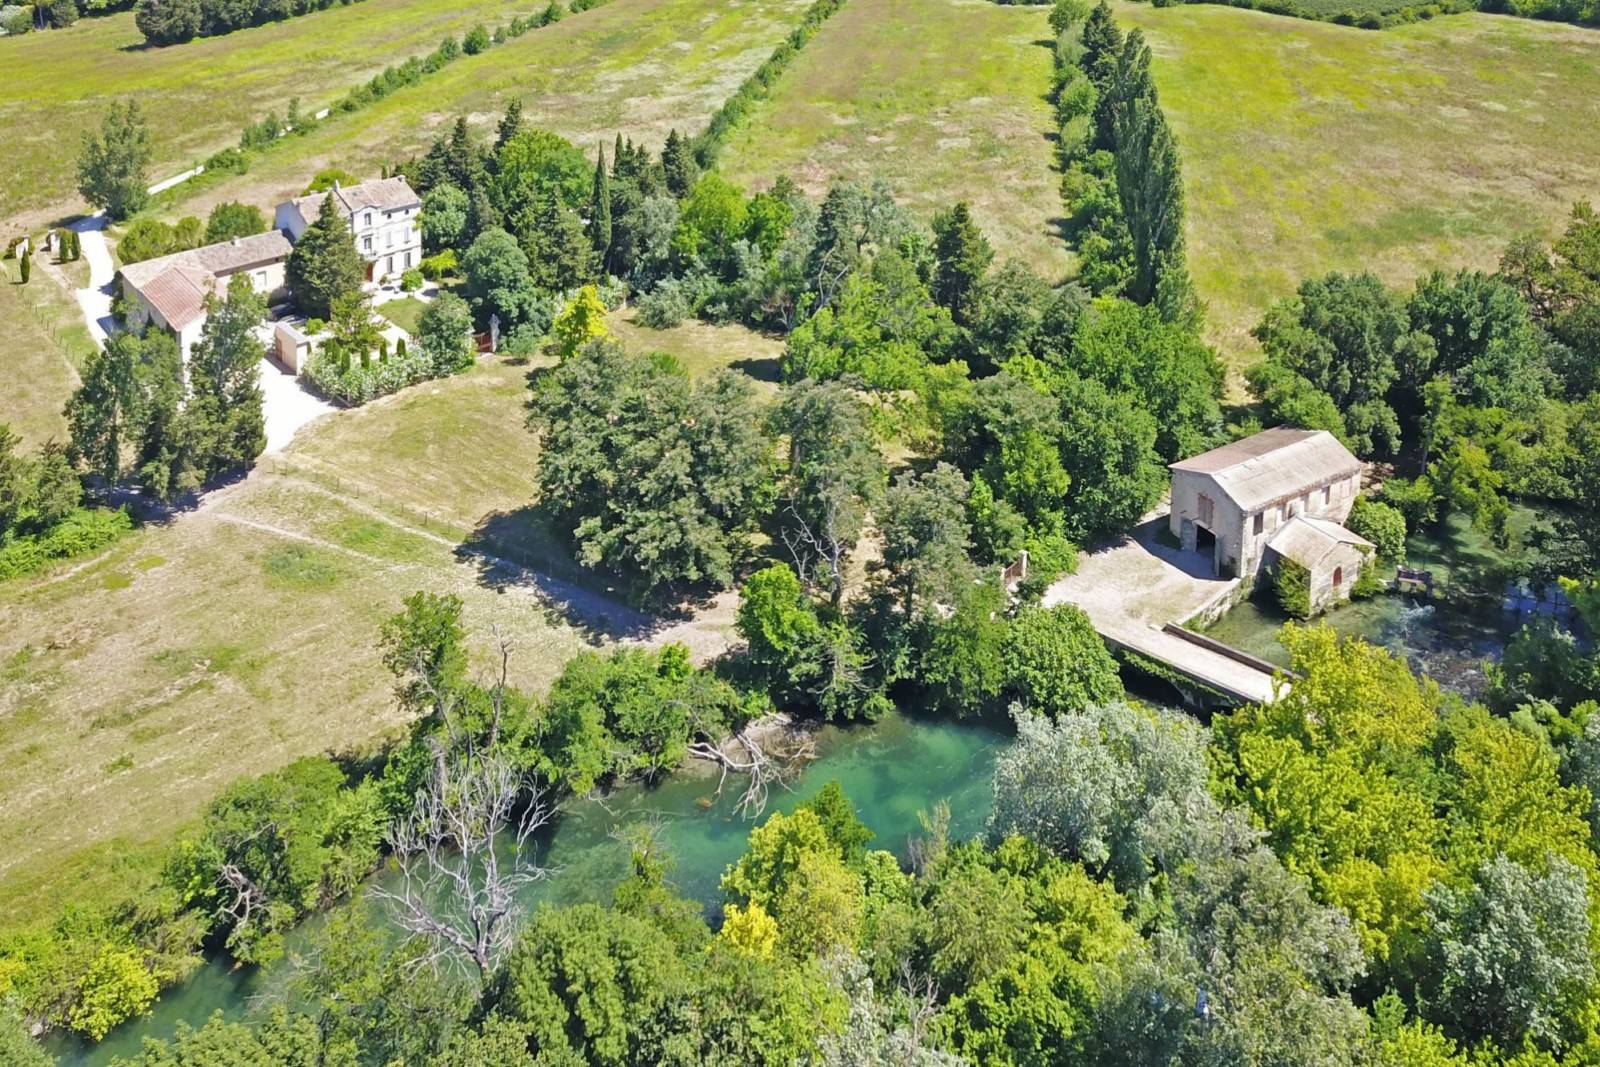 Vente château provençal avec dépendances sur 20 hectares en bordure de rivière